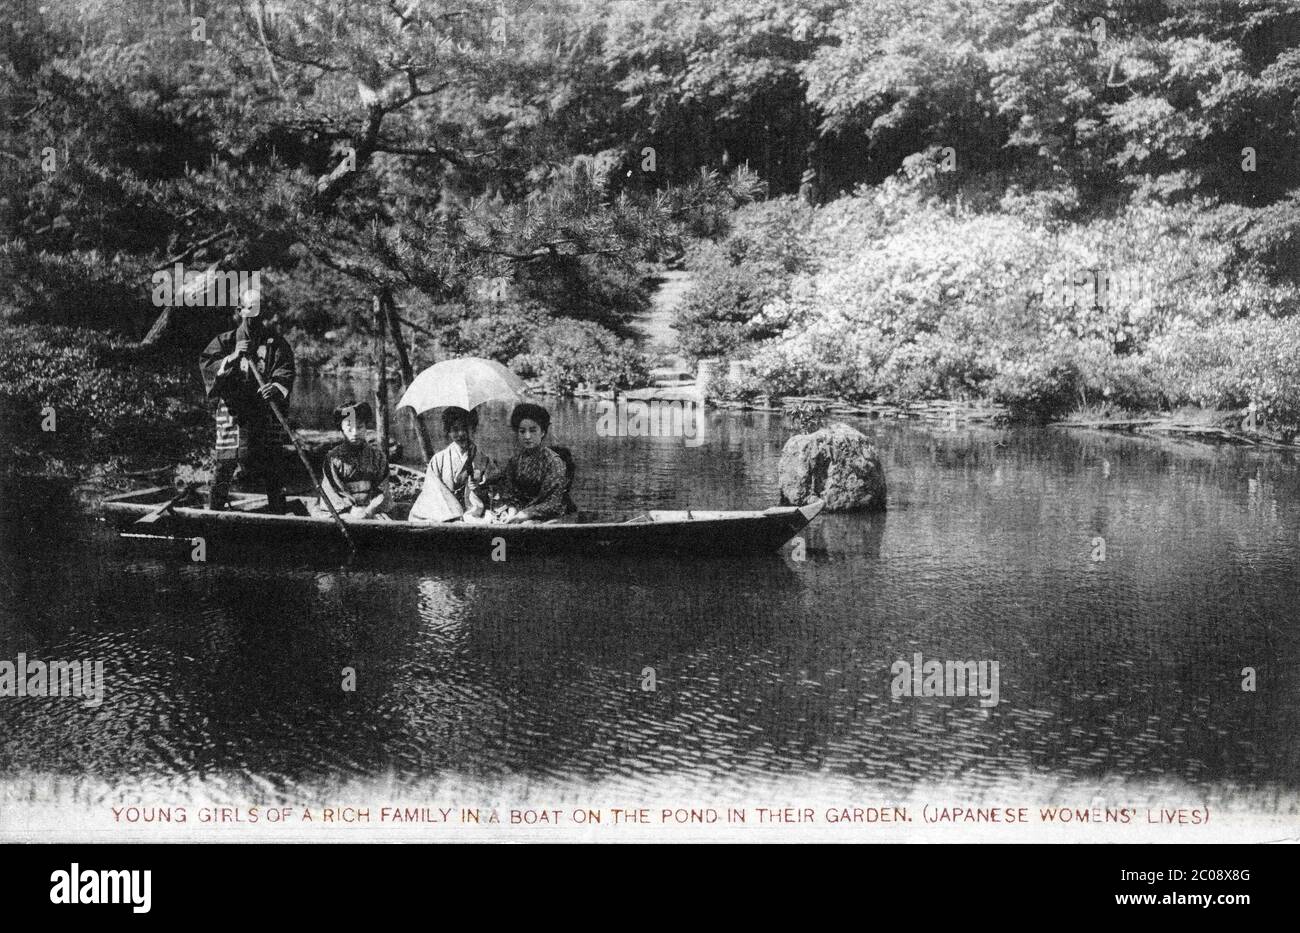 [ années 1920 Japon - les femmes dans un bateau ] — jeunes femmes japonaises dans un bateau. Texte original: Jeunes filles d'une famille riche dans un bateau sur l'étang dans leur jardin. (Vies des femmes japonaises) carte postale du XXe siècle. Banque D'Images